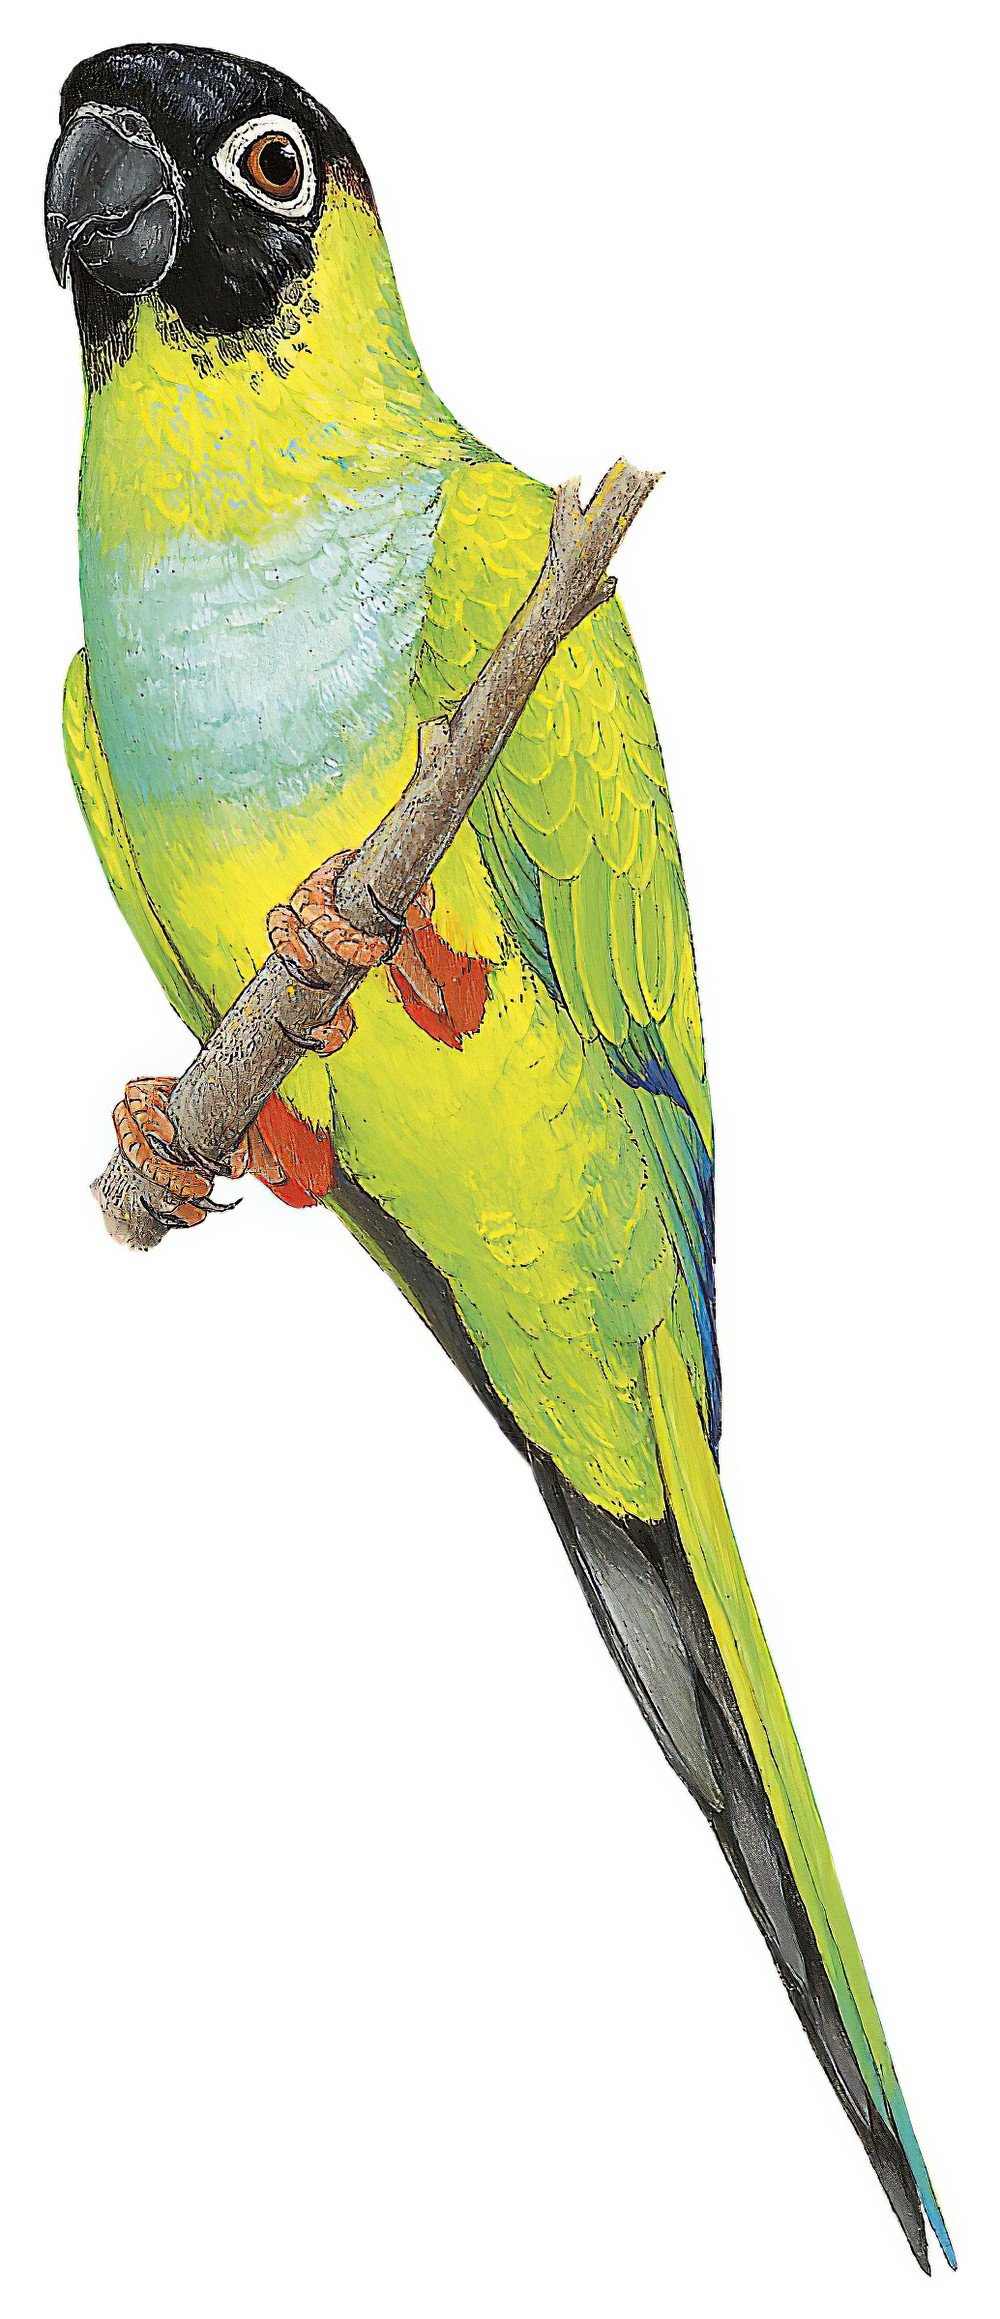 Nanday Parakeet / Aratinga nenday